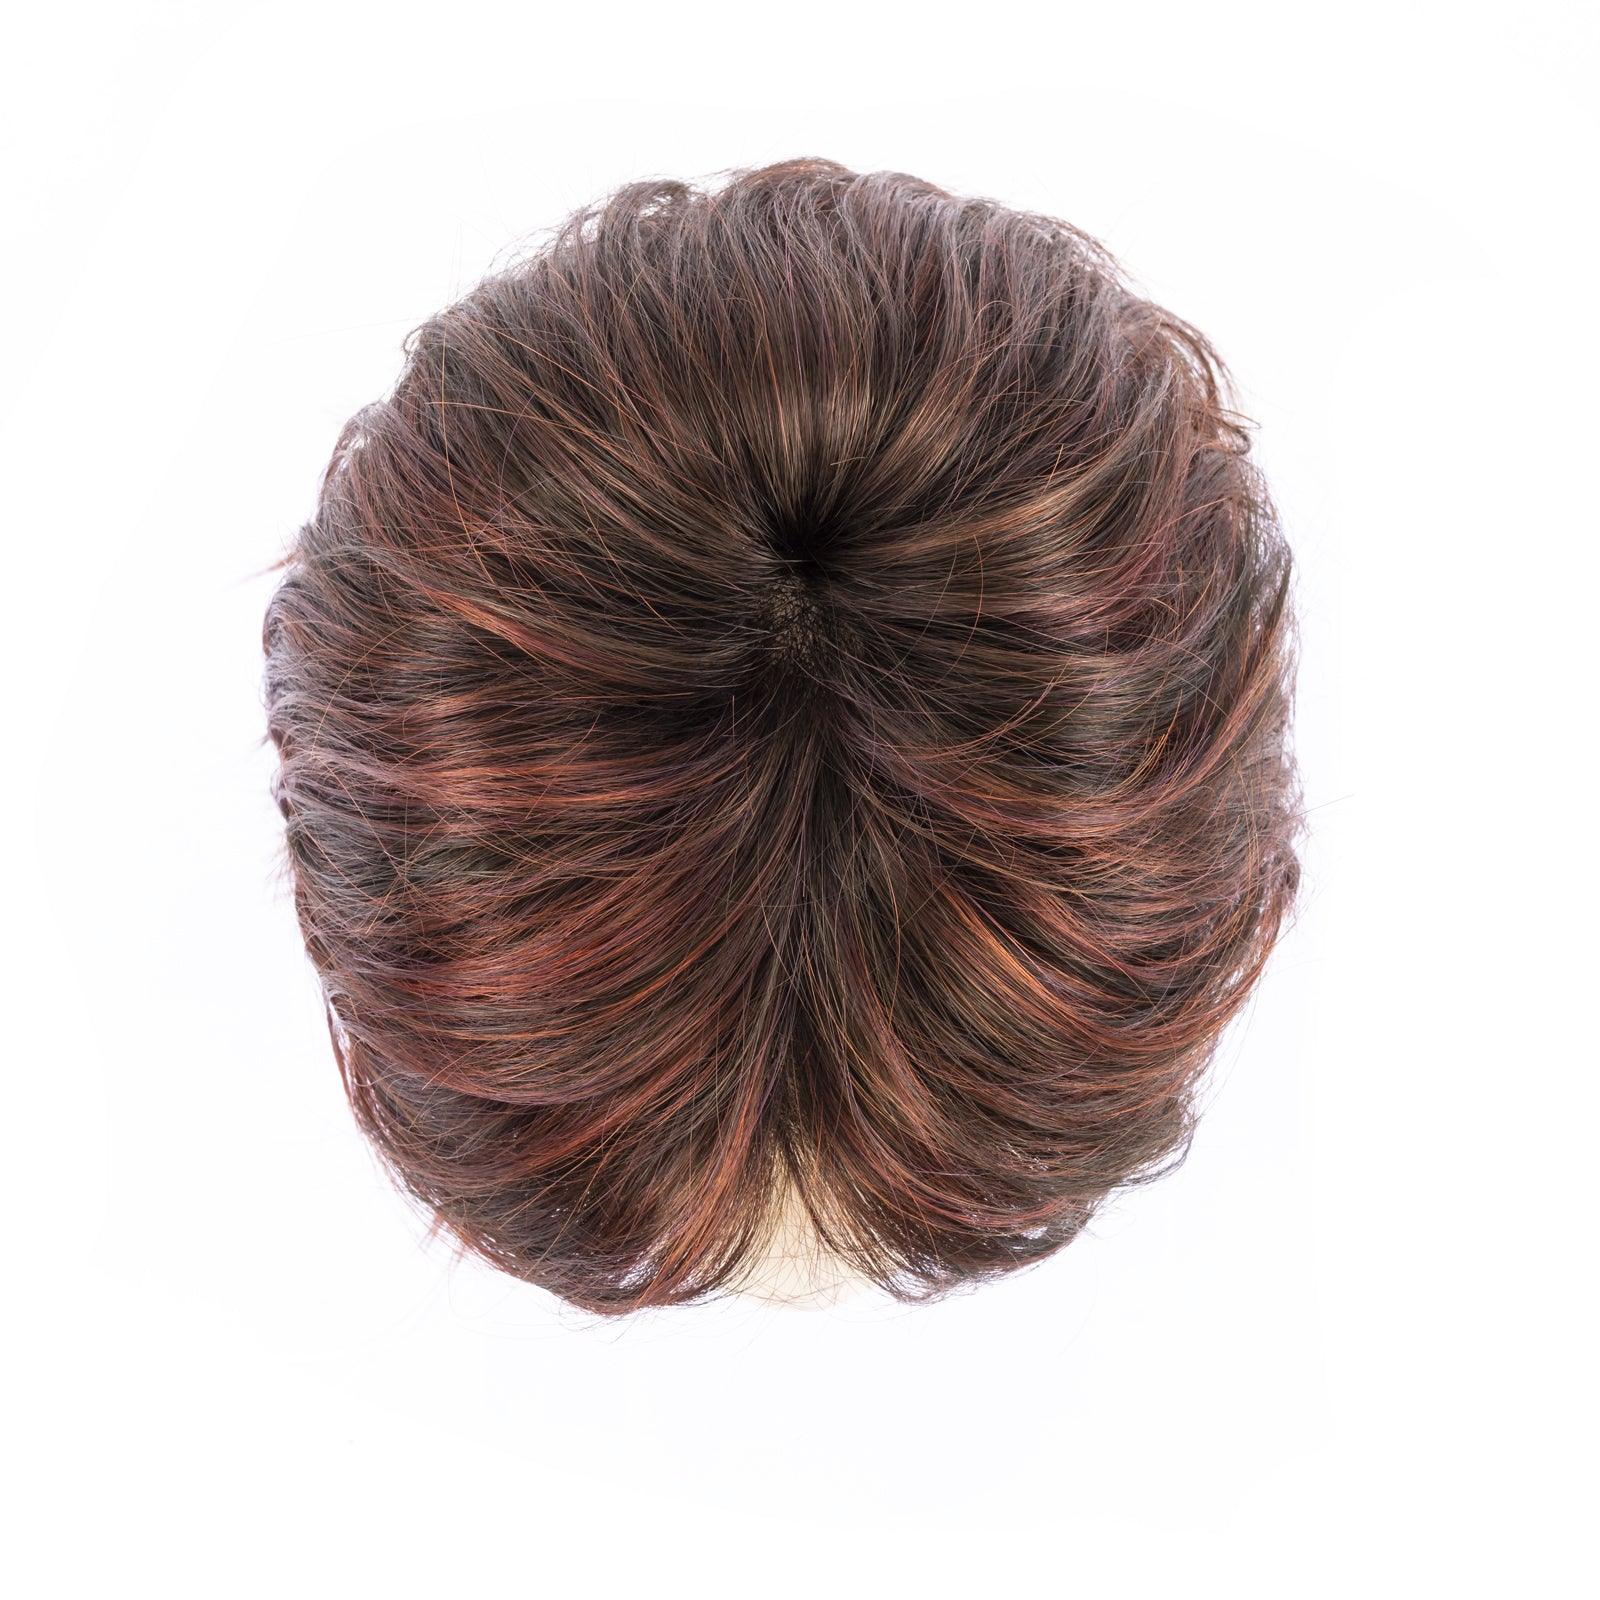 Ferrara Wig by Ellen Wille | Synthetic - Ultimate Looks